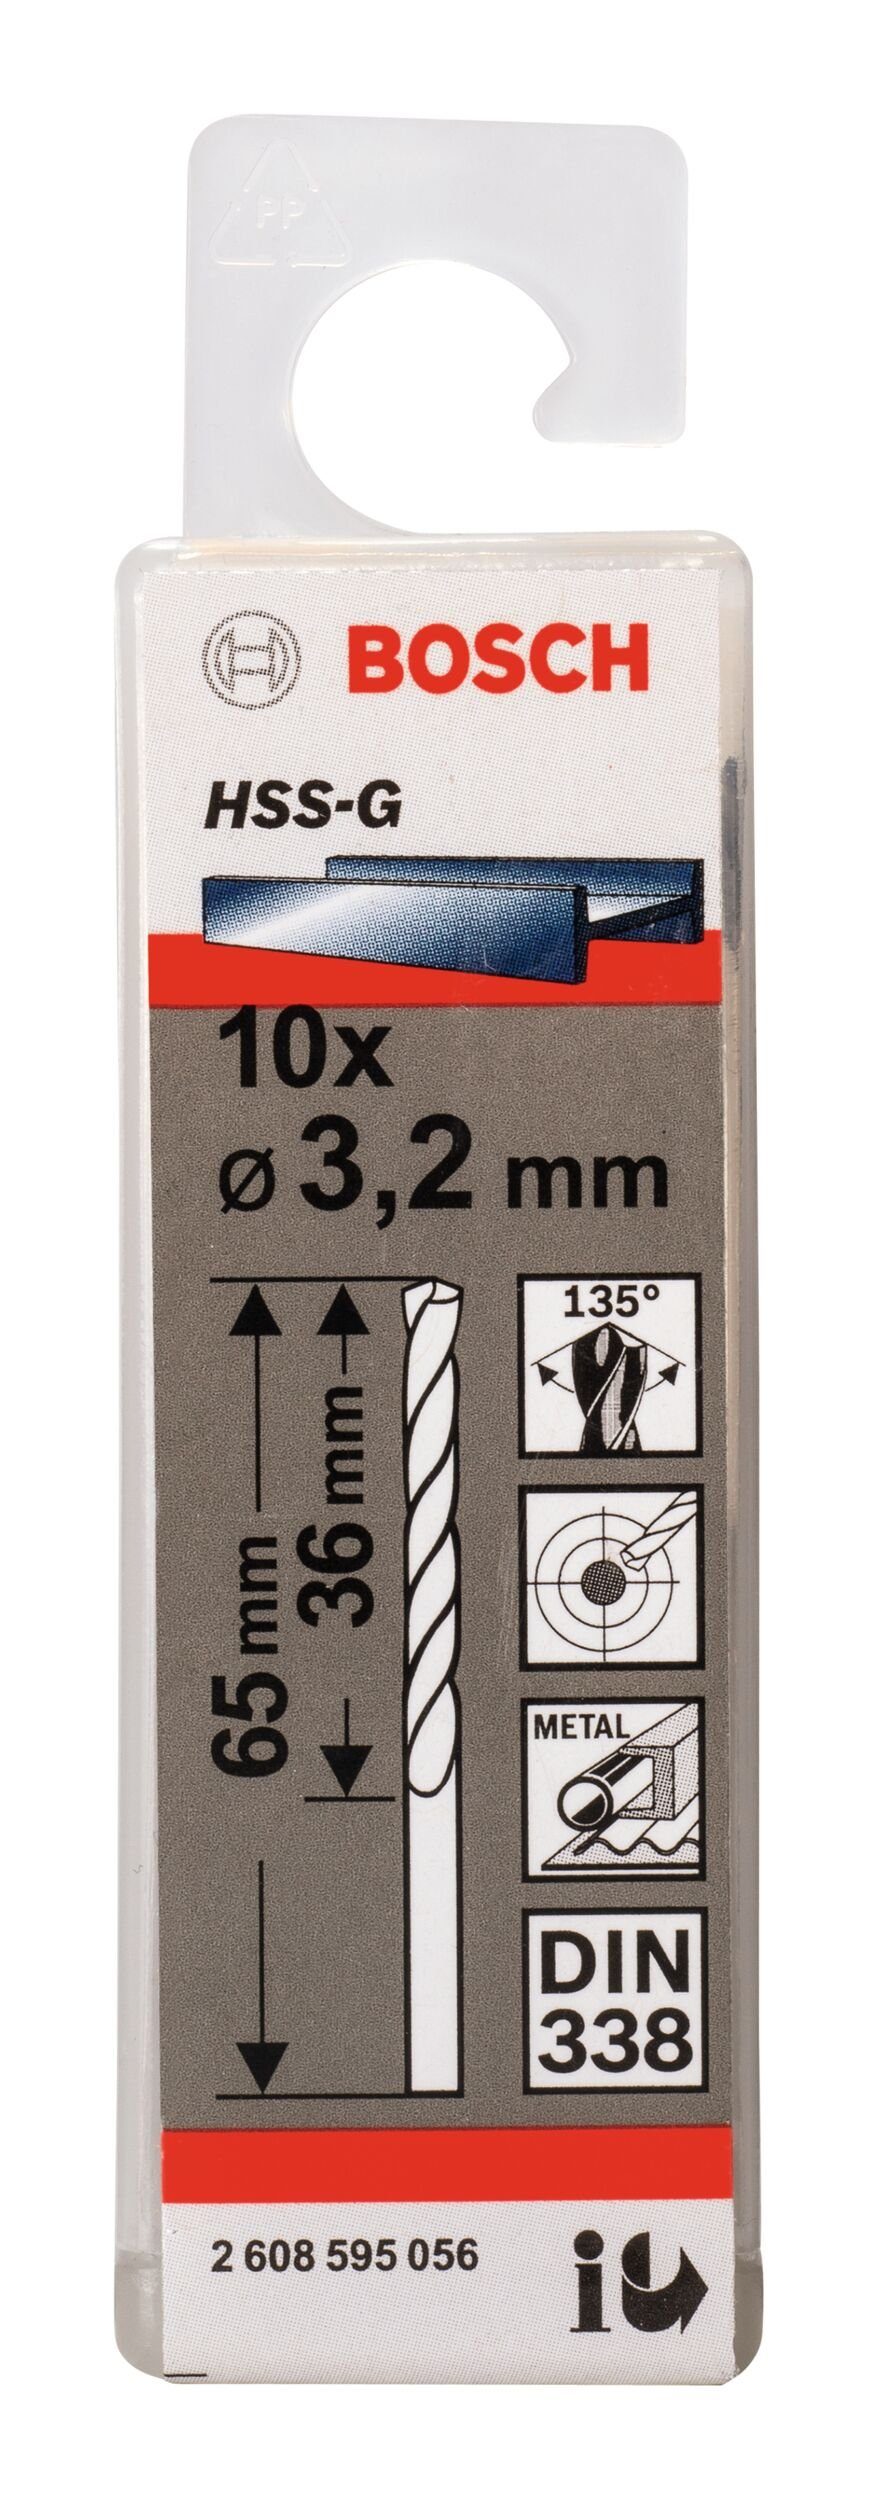 x x (DIN Stück), - Metallbohrer, - 338) 3,2 mm BOSCH 36 (10 65 10er-Pack HSS-G